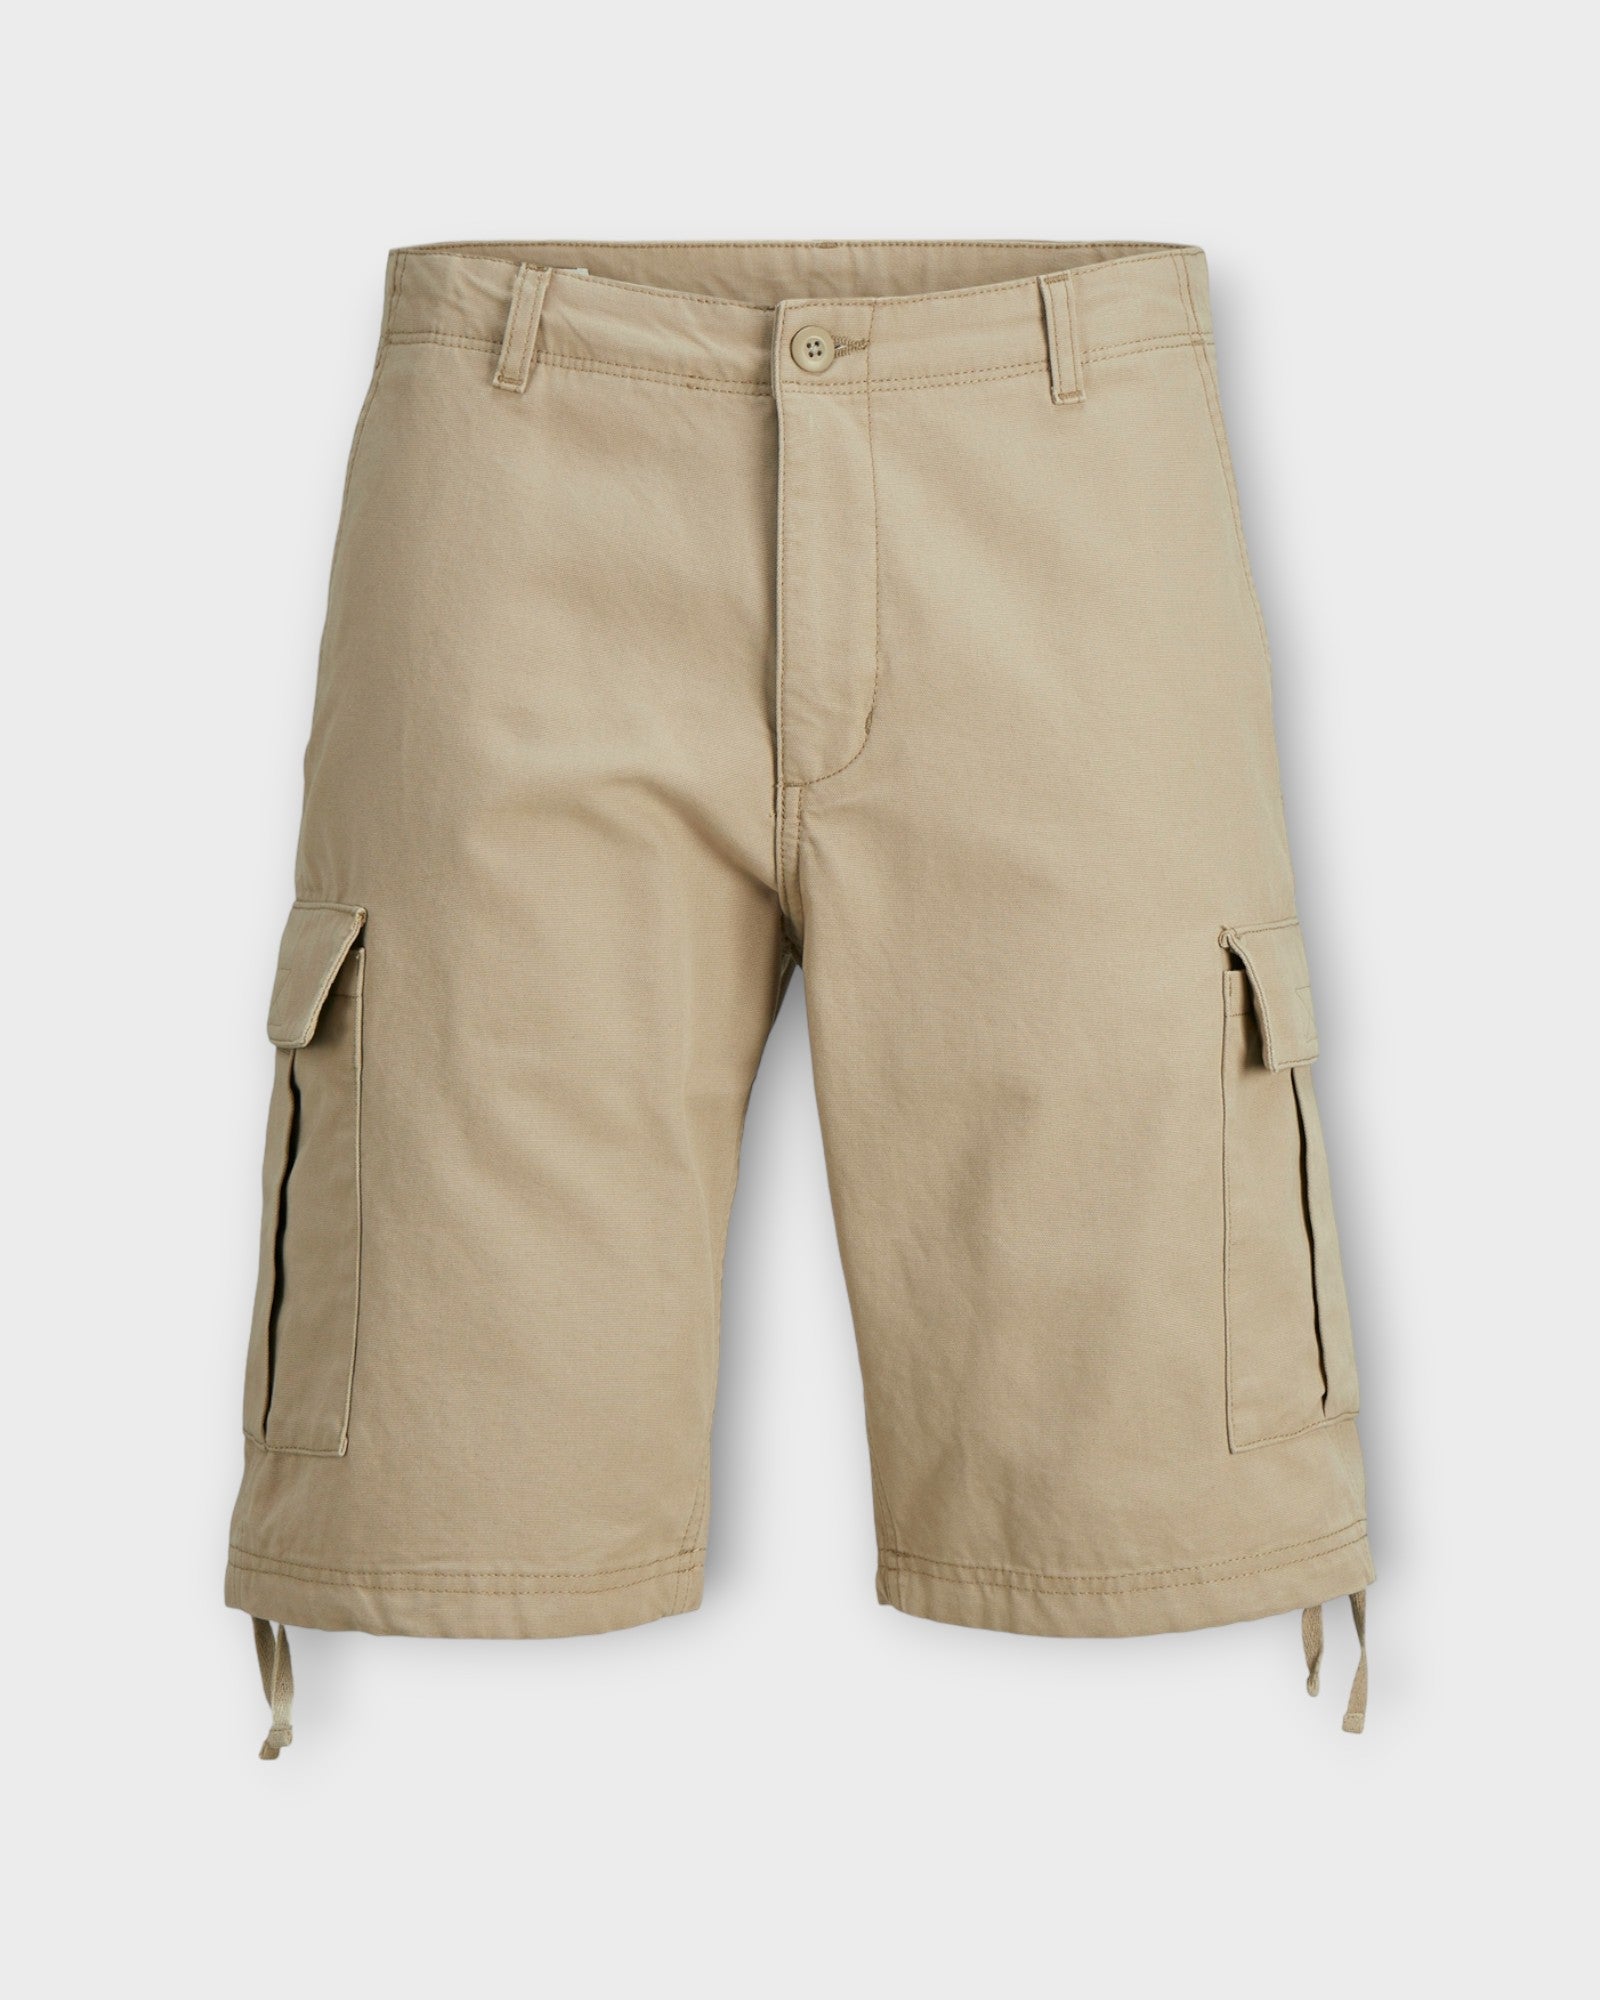 Cole Barkley Cargo Shorts Crockery fra Jack and Jones. Sandfarvet cargo shorts til mænd. Her set forfra.